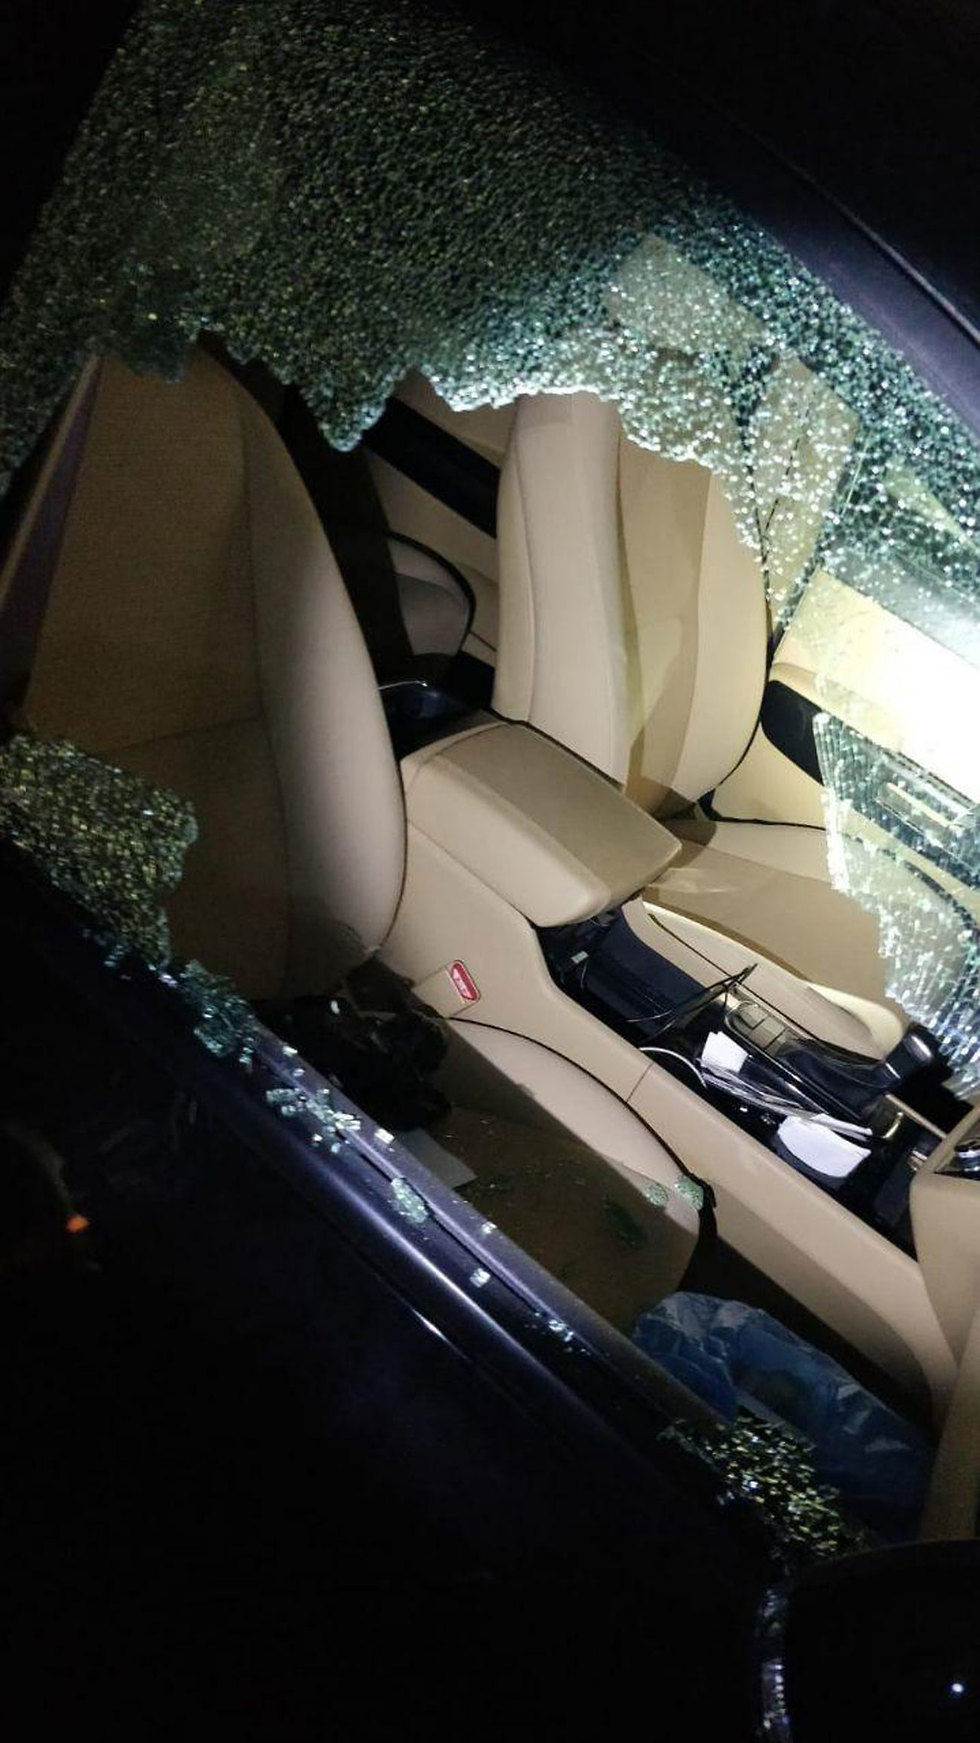 ליל ונדלים באשדוד: הנזקים שנגרמו לרכבים באשדוד (צילום: דוברות המשטרה)